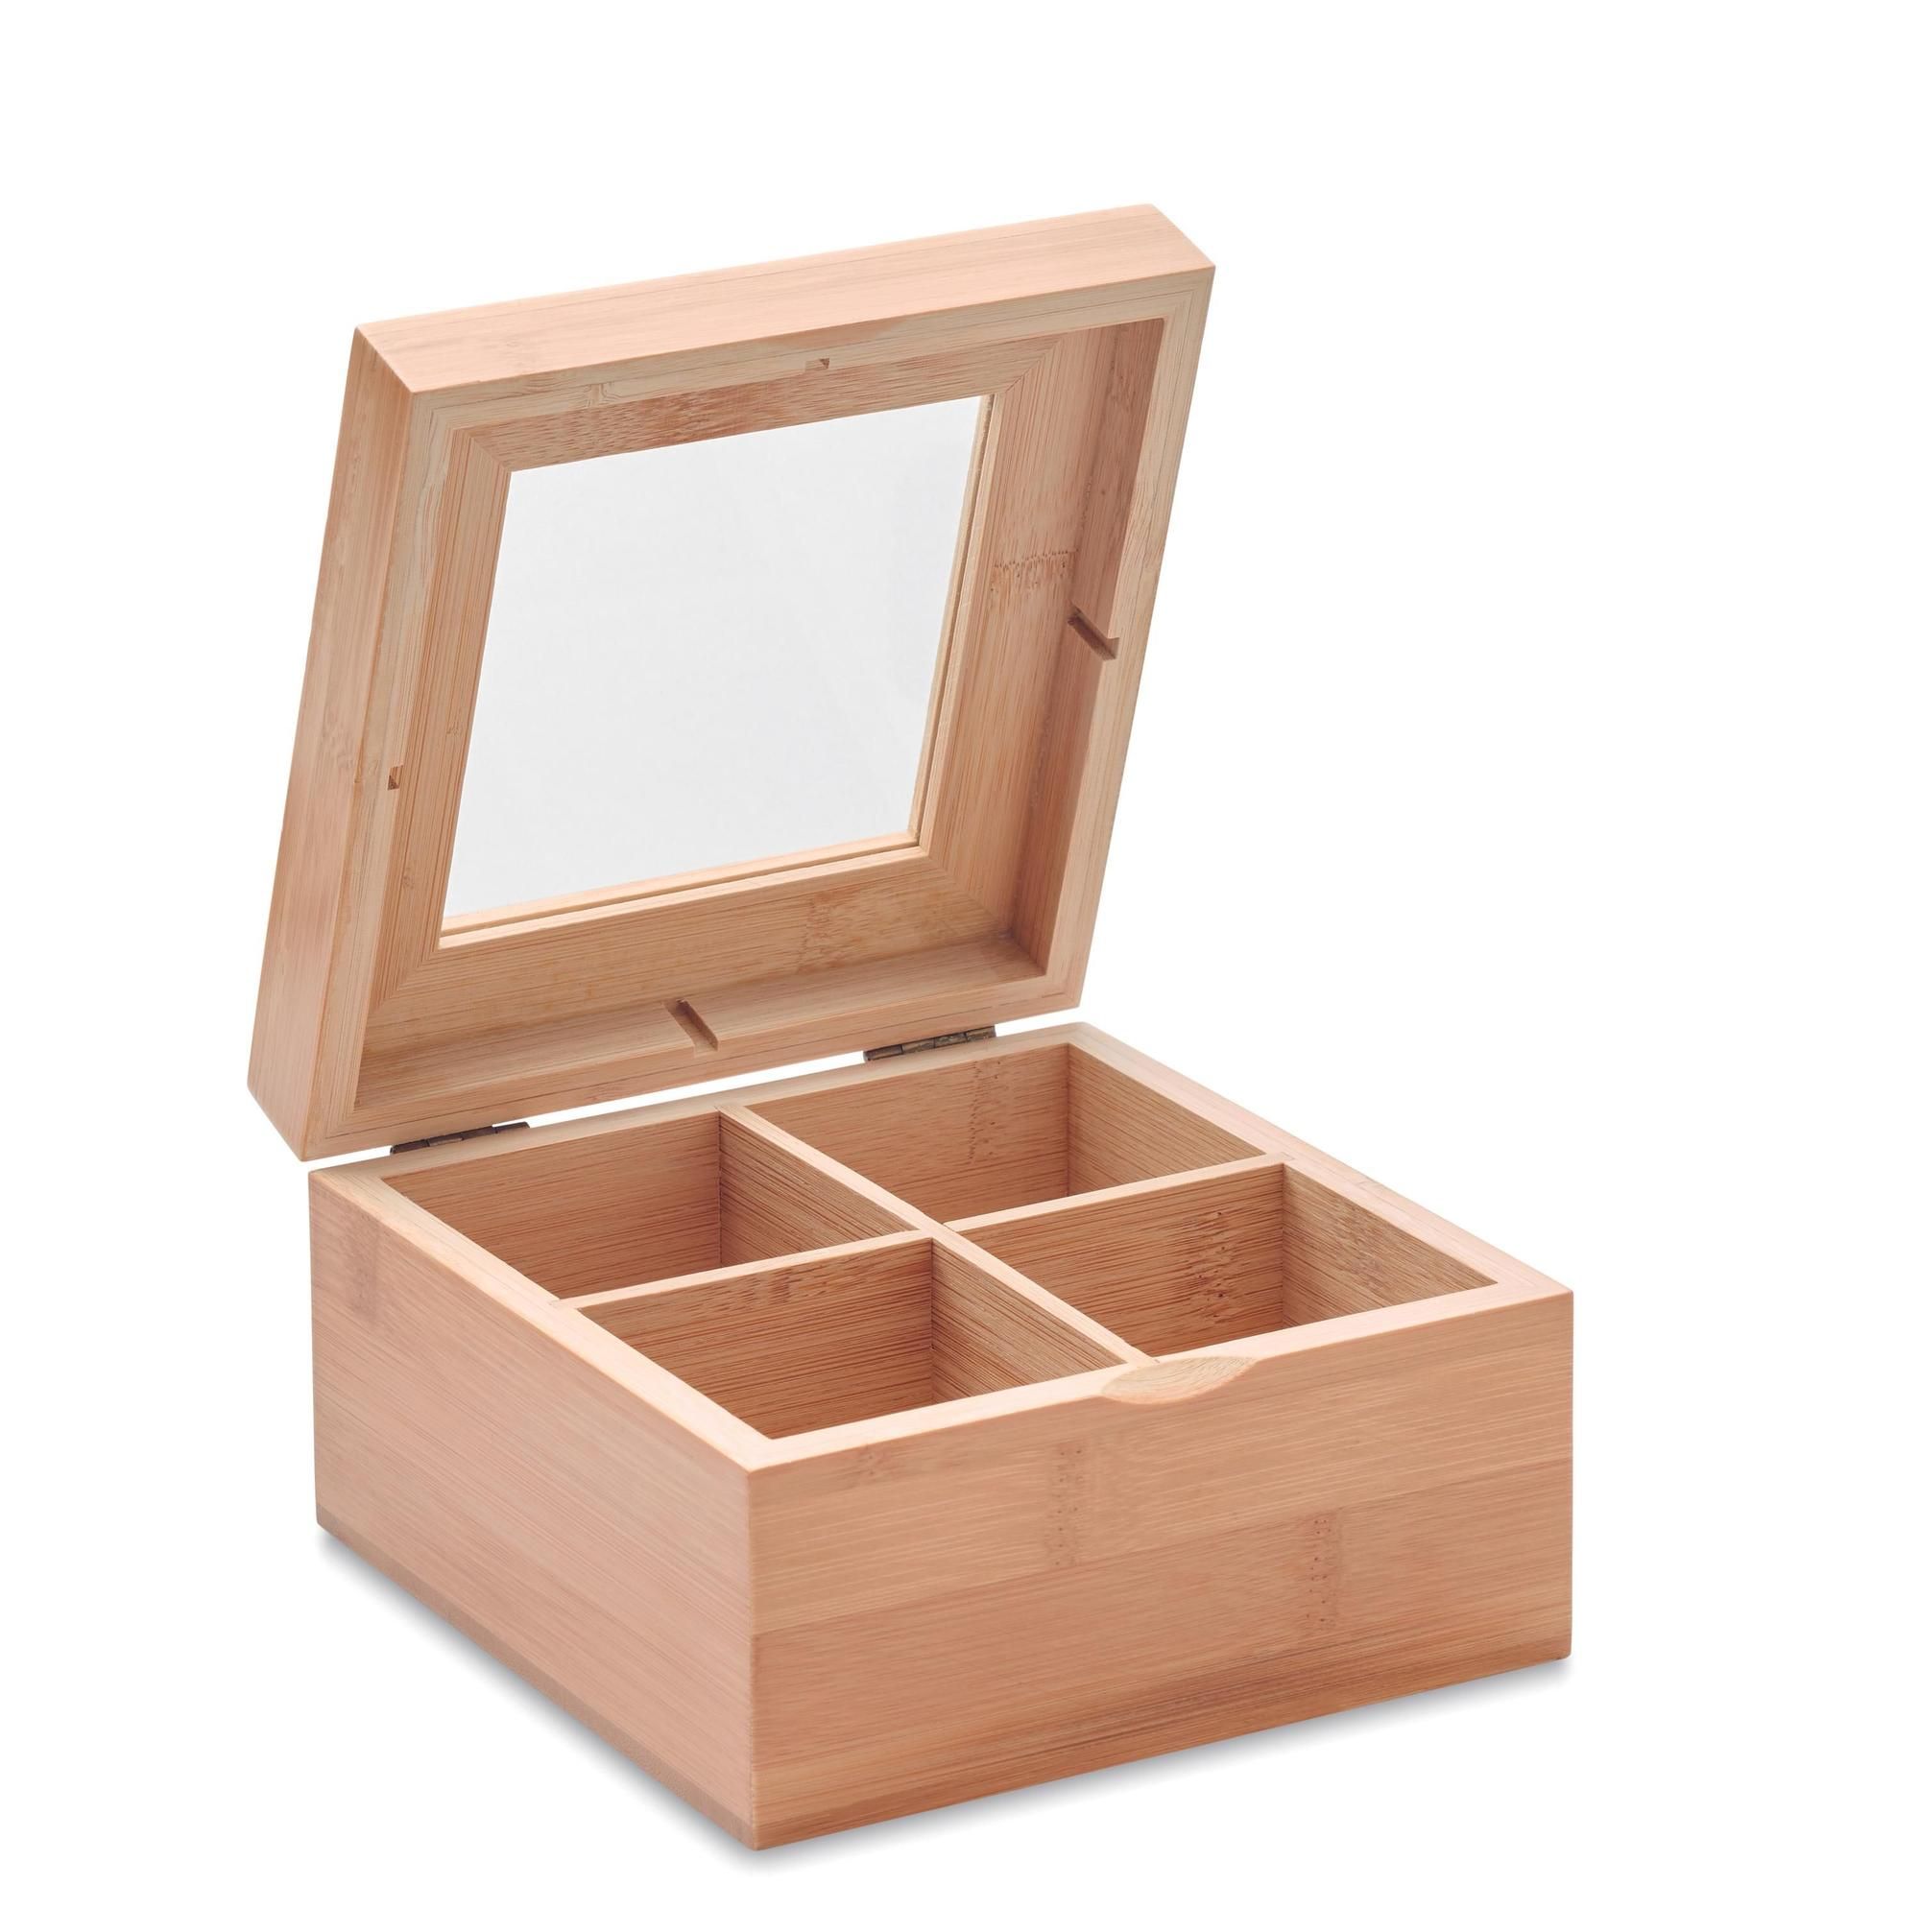 Caja madera bambou con 4 compartimentos con tapa cristal